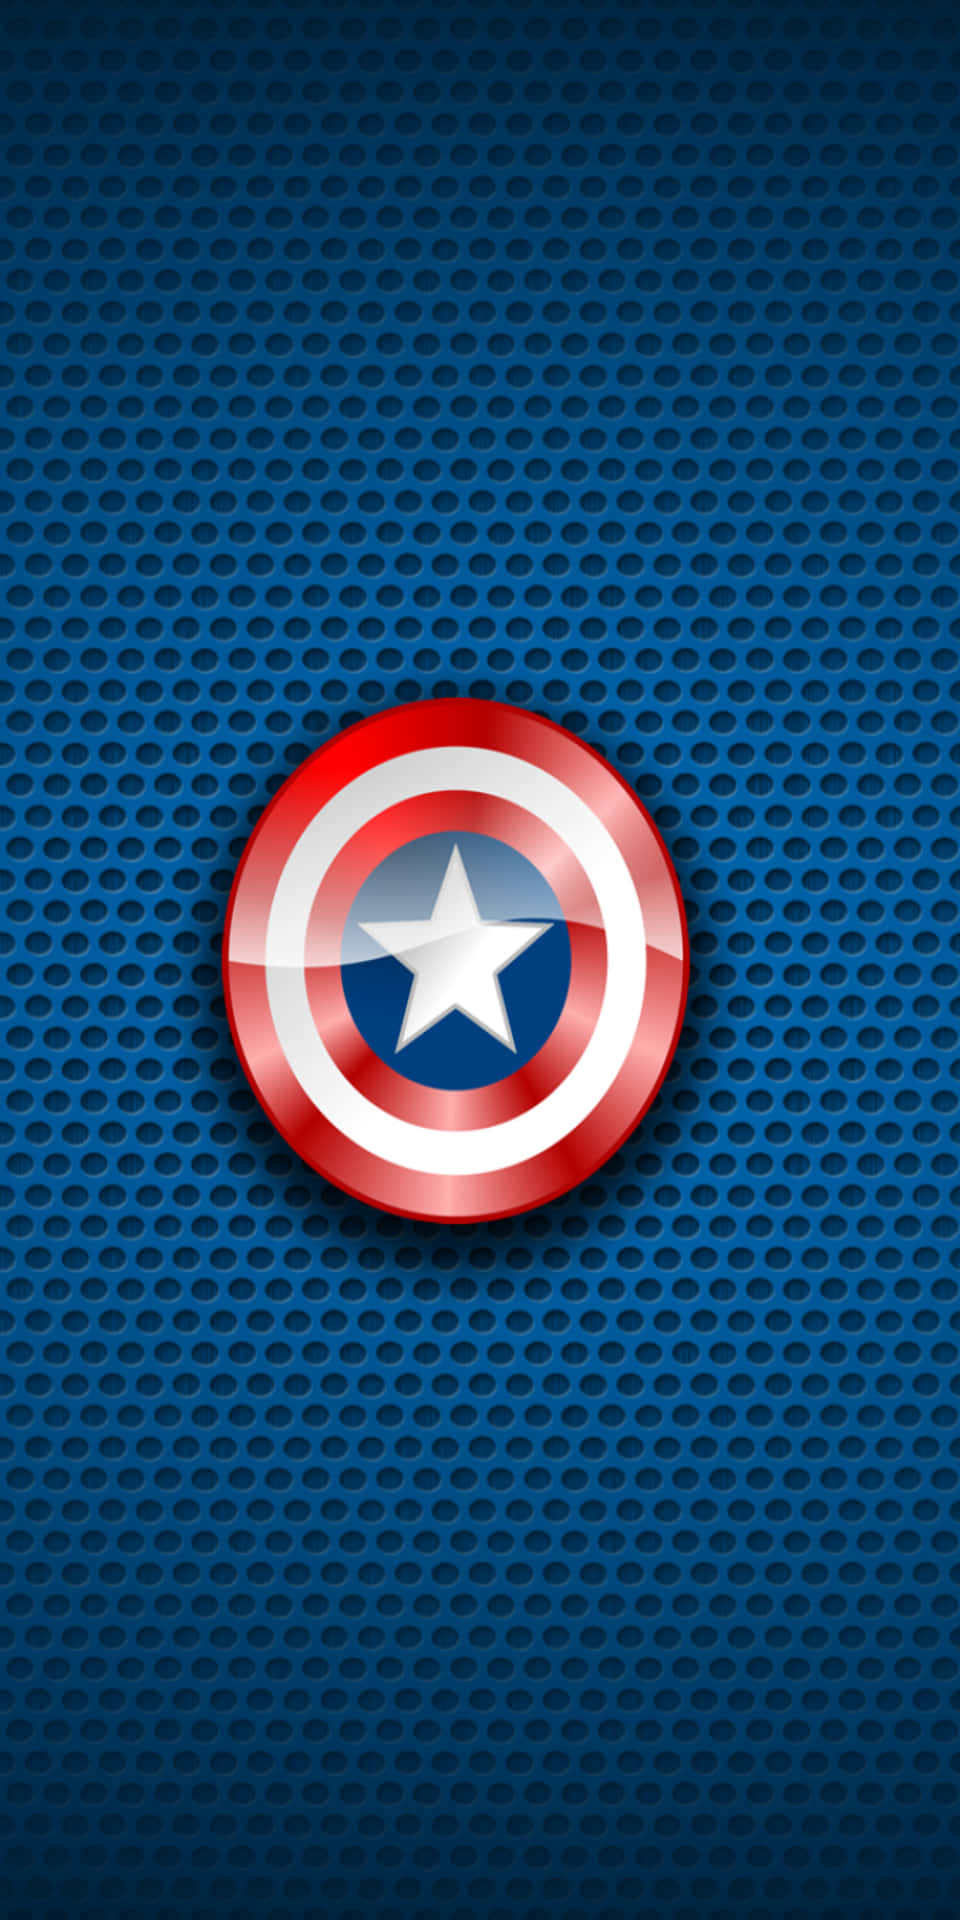 Sfondodel Pixel 3 Con Lo Scudo Di Captain America Di Marvel.